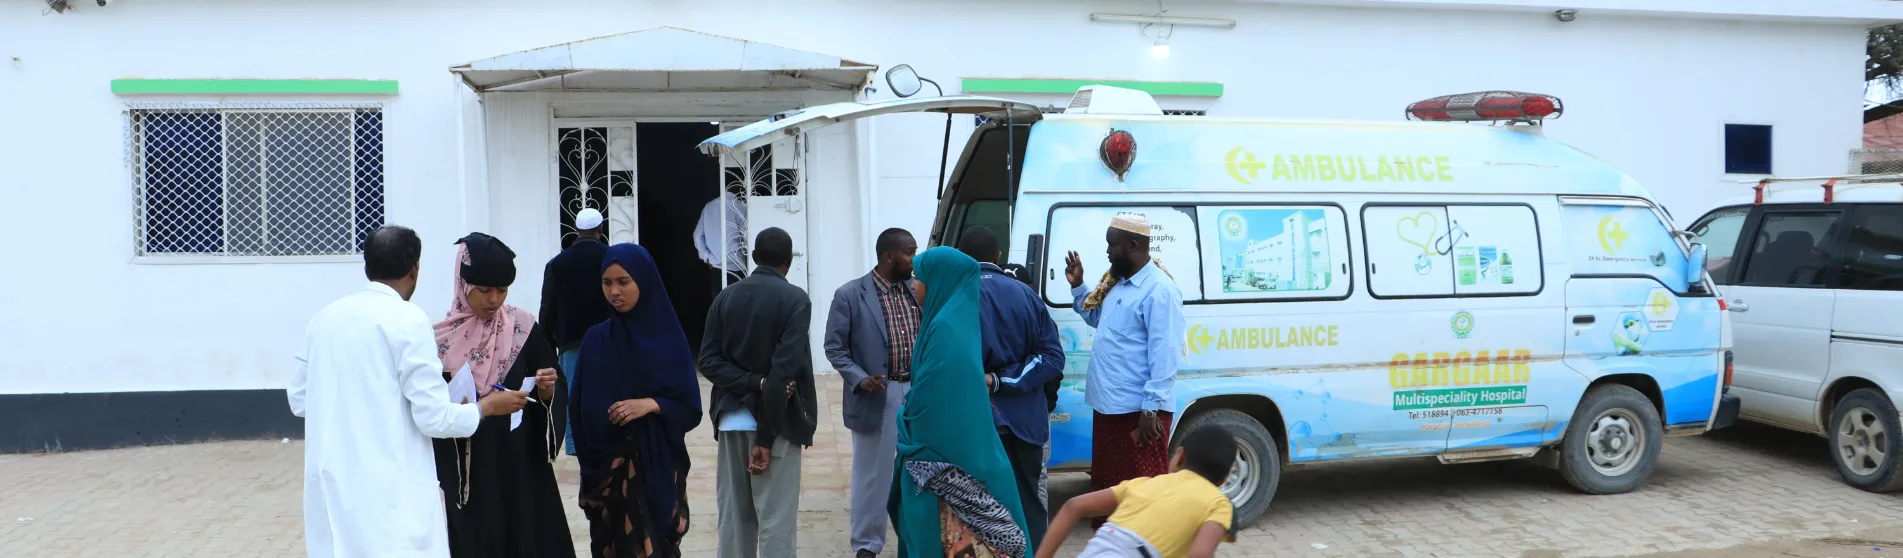 Ambulance Somaliland Hargeisa Group Hospital